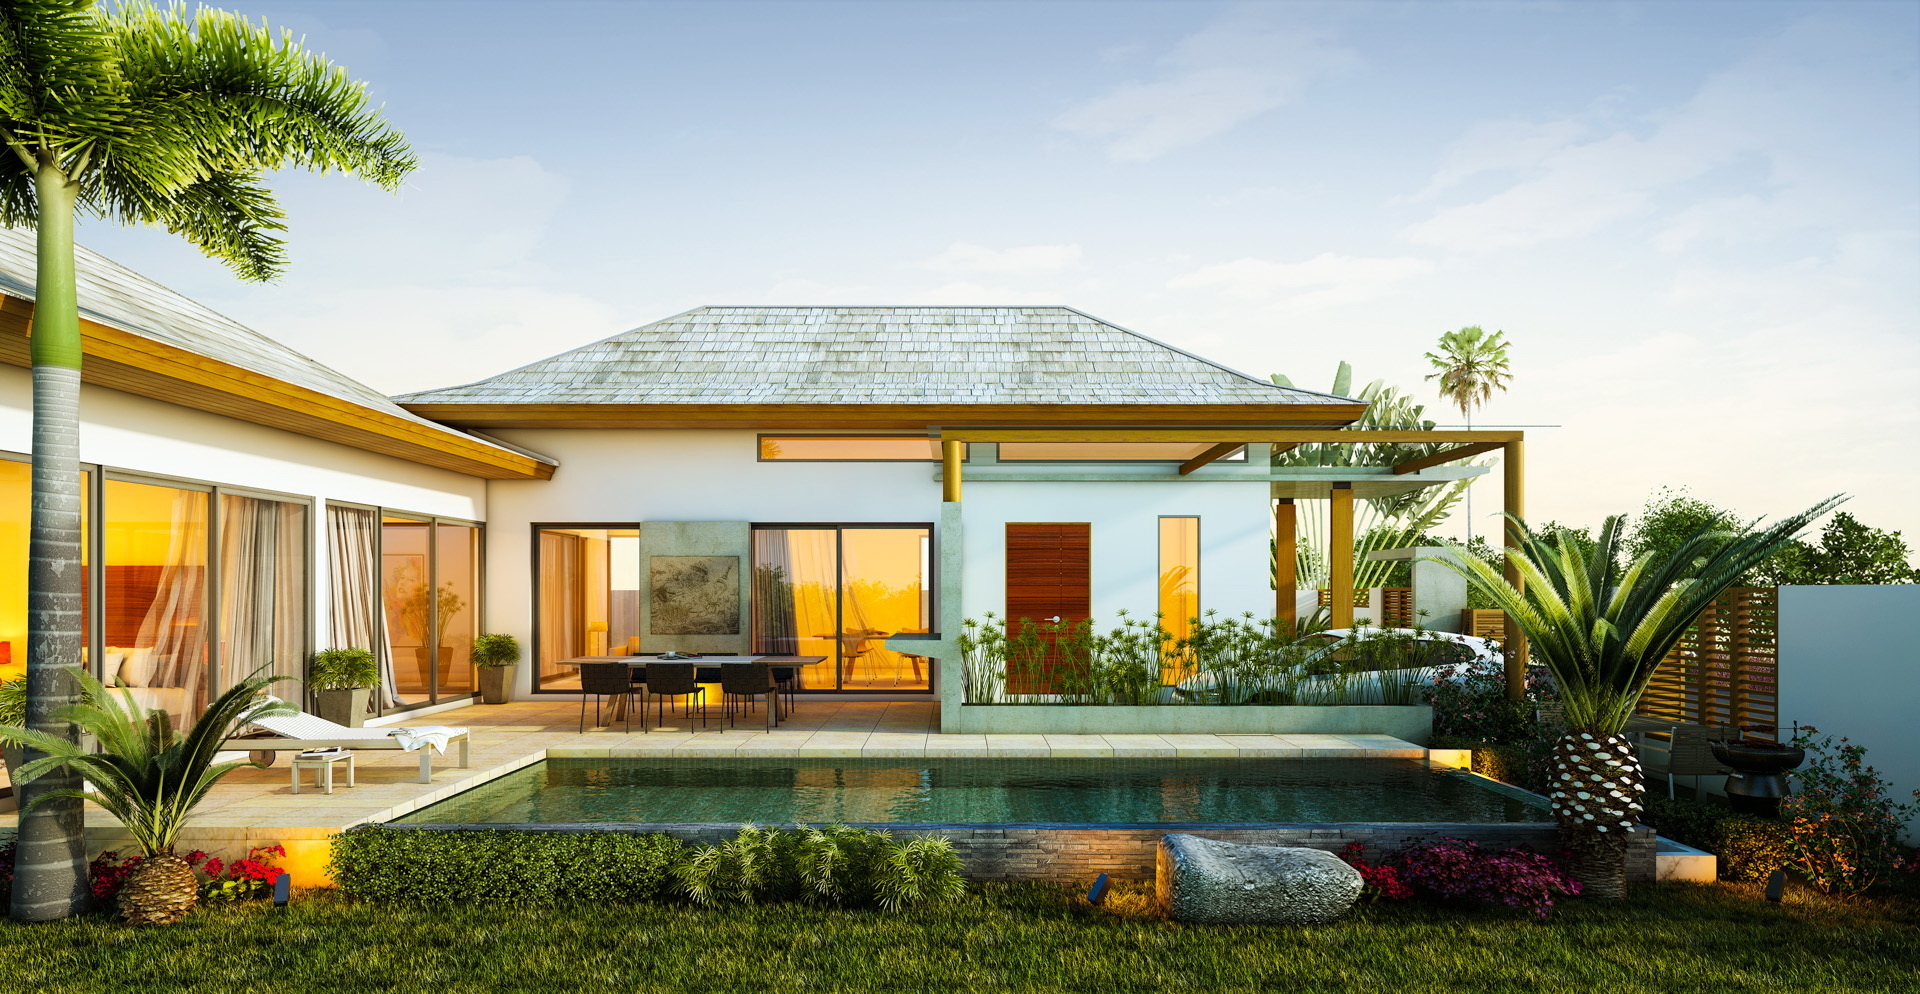 Tropical Island Homes Designs Desain Rumah Tropis Mewah 1920x994 Wallpaper Teahubio